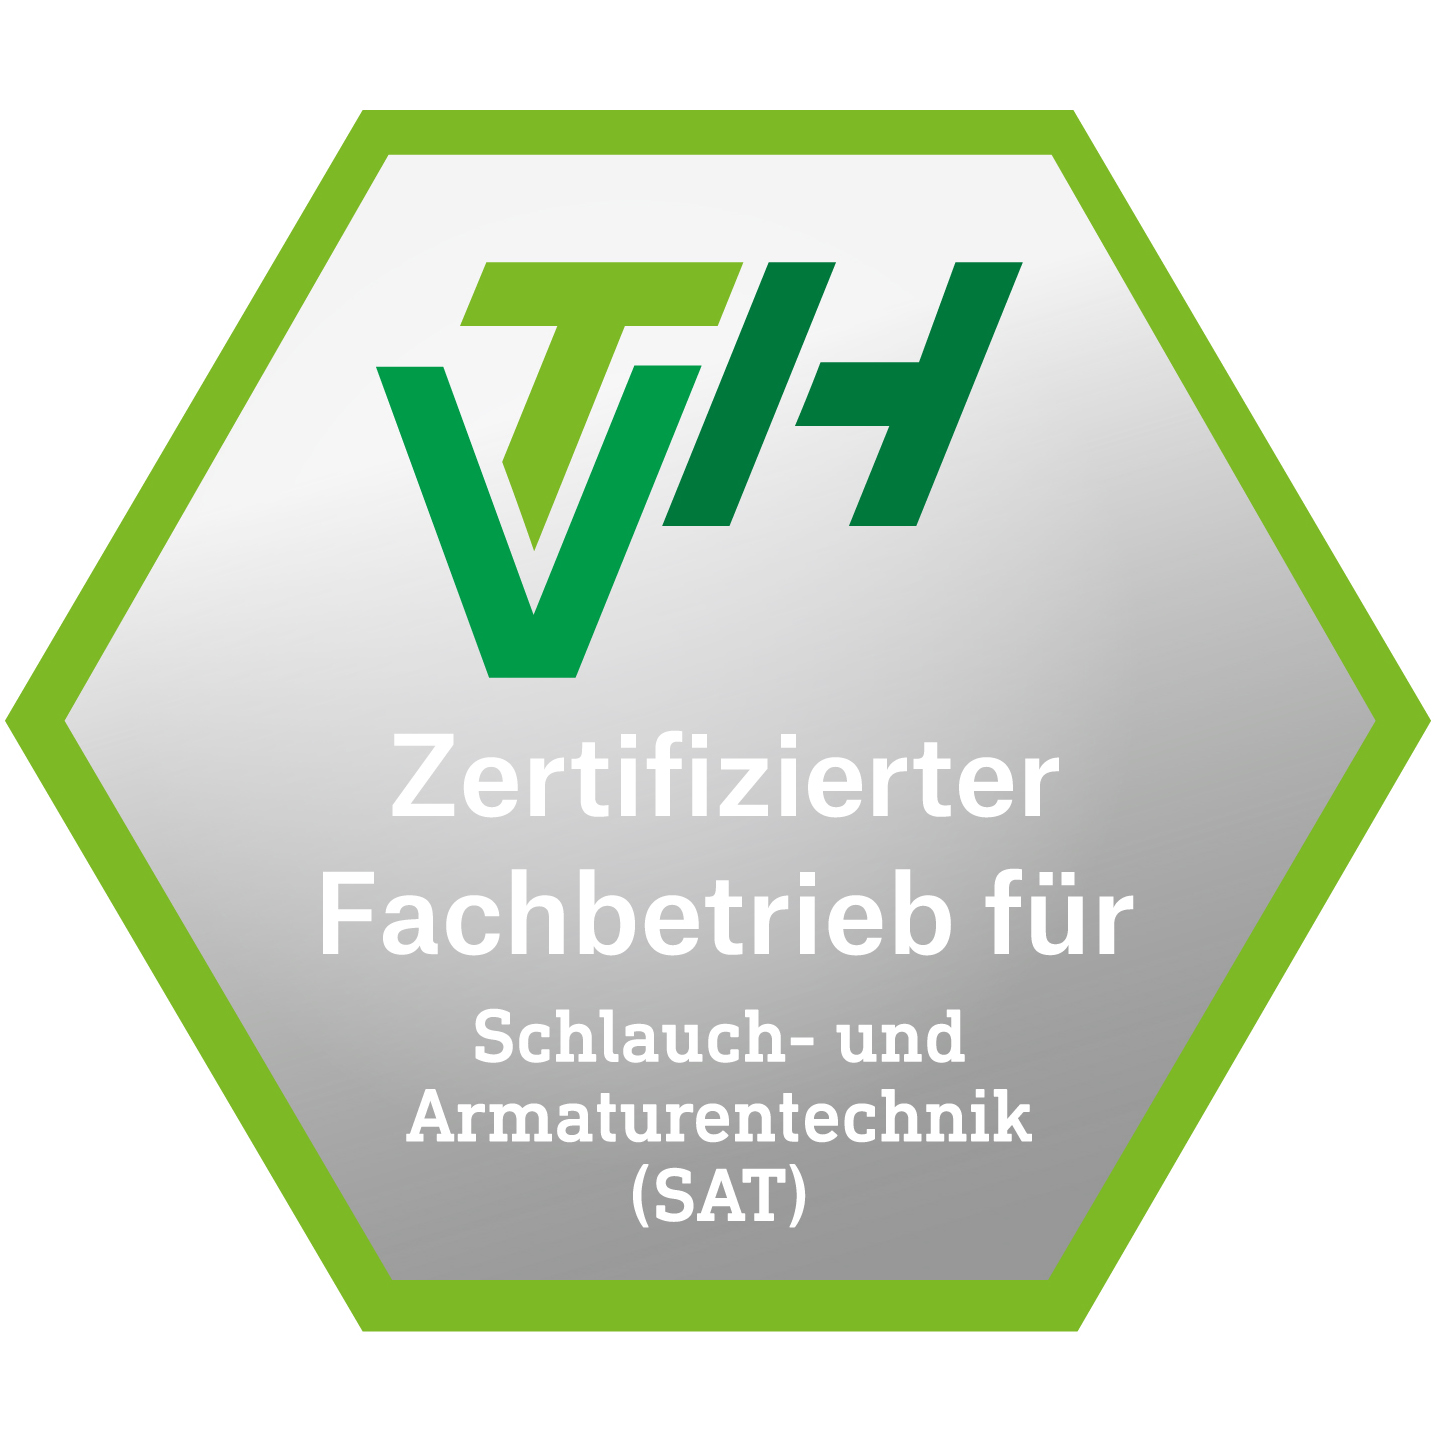 Prüfsiegel "Zertifizierter Fachbetrieb für Schlauch- und Armaturentechnik (SAT)"